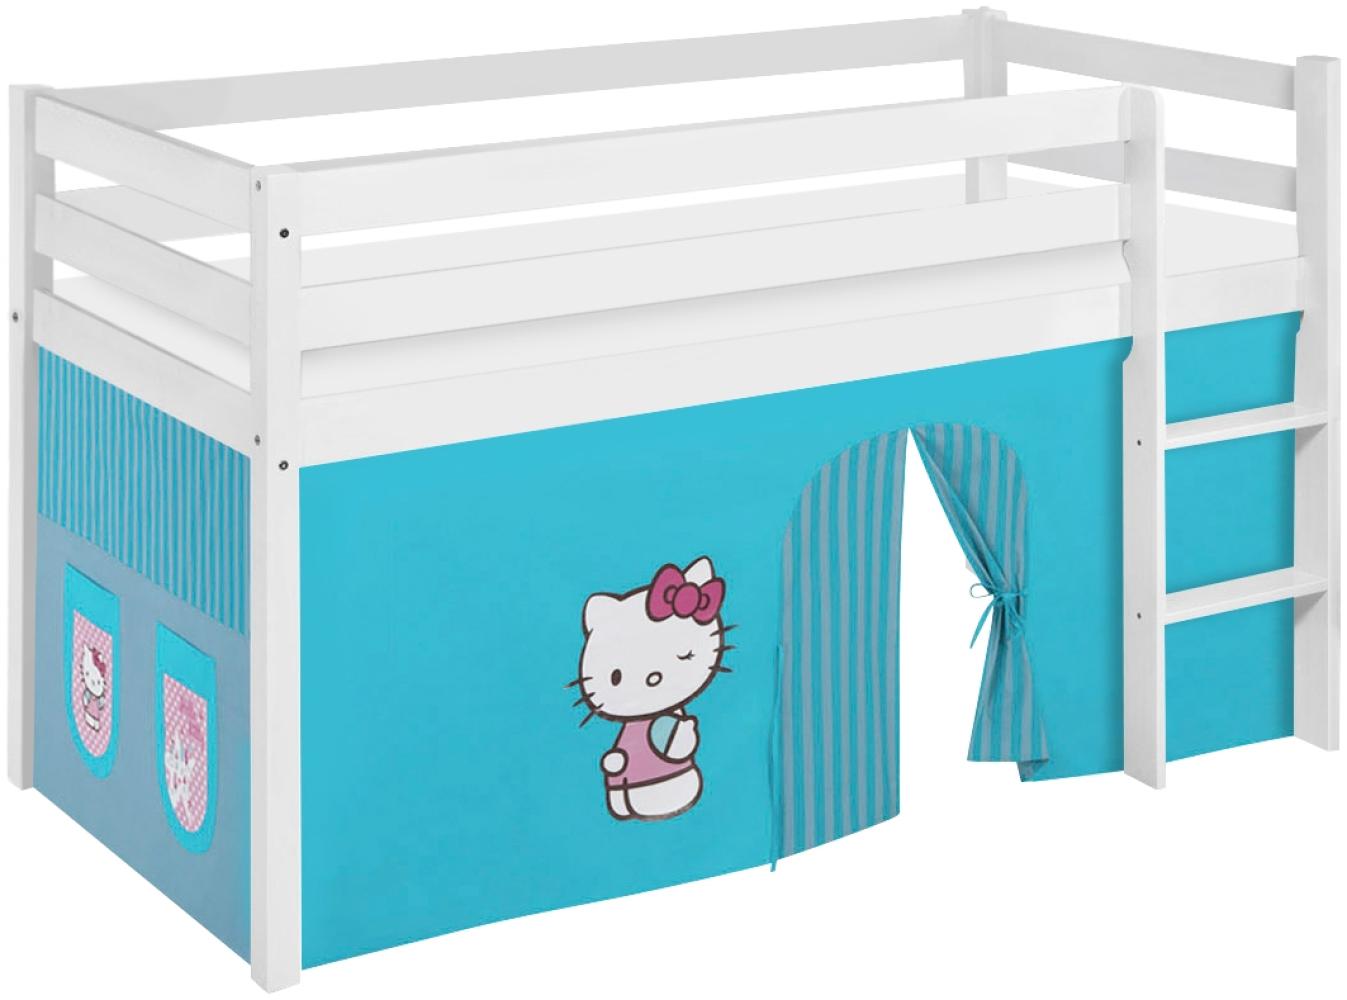 Lilokids 'Jelle' Spielbett 90 x 190 cm, Hello Kitty Türkis, Kiefer massiv, mit Vorhang Bild 1